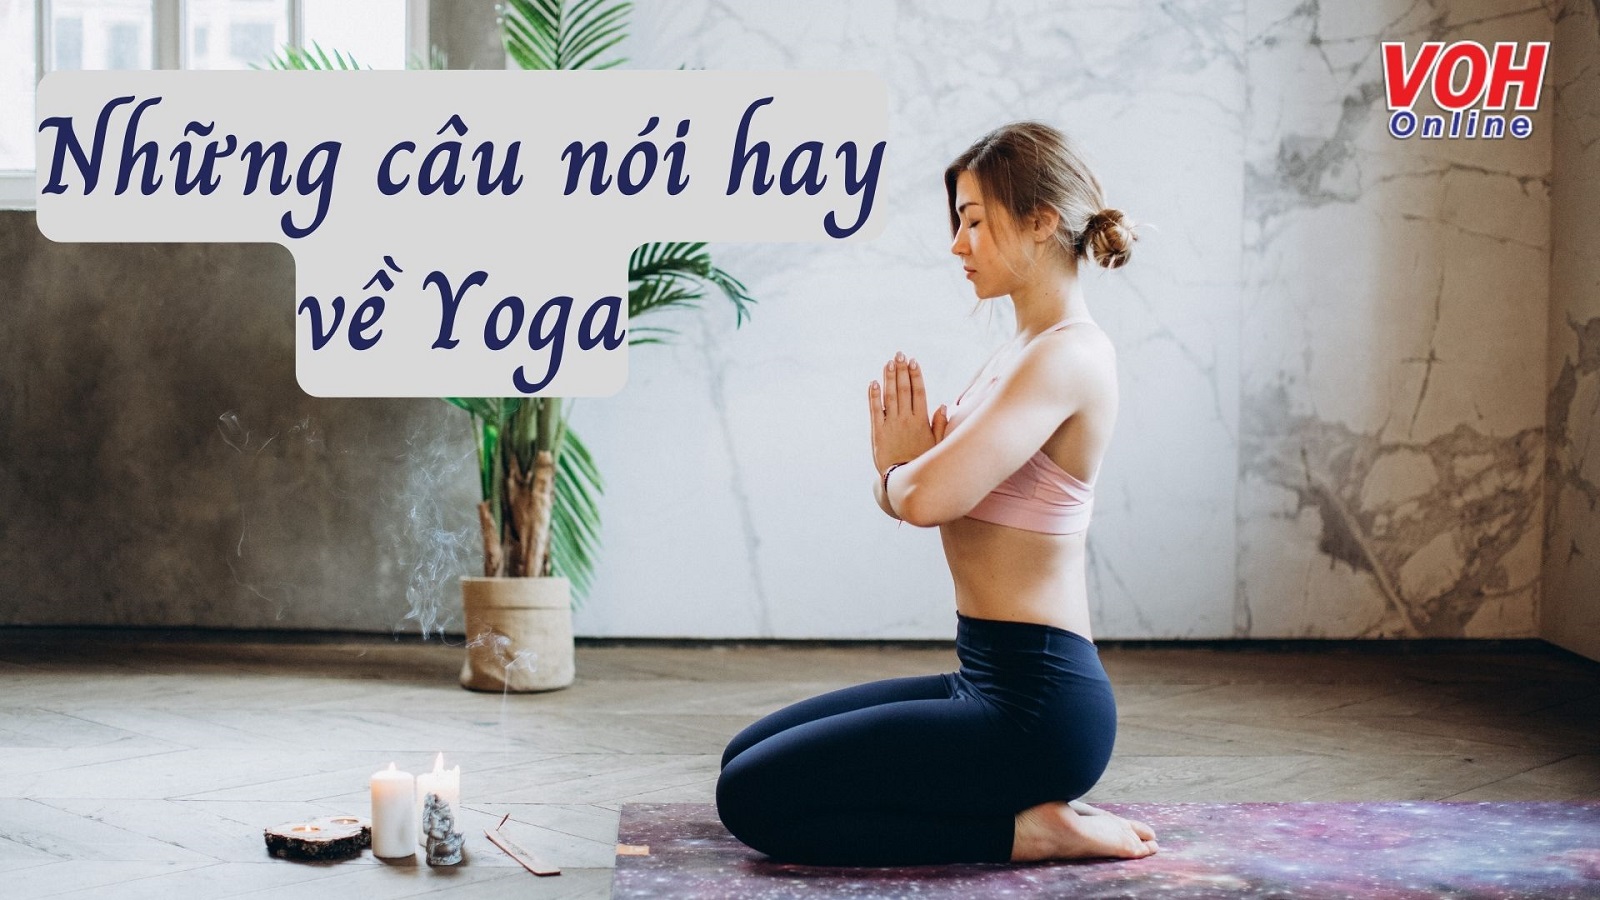 Tổng hợp những câu nói hay về Yoga giúp truyền cảm hứng và động lực tập luyện